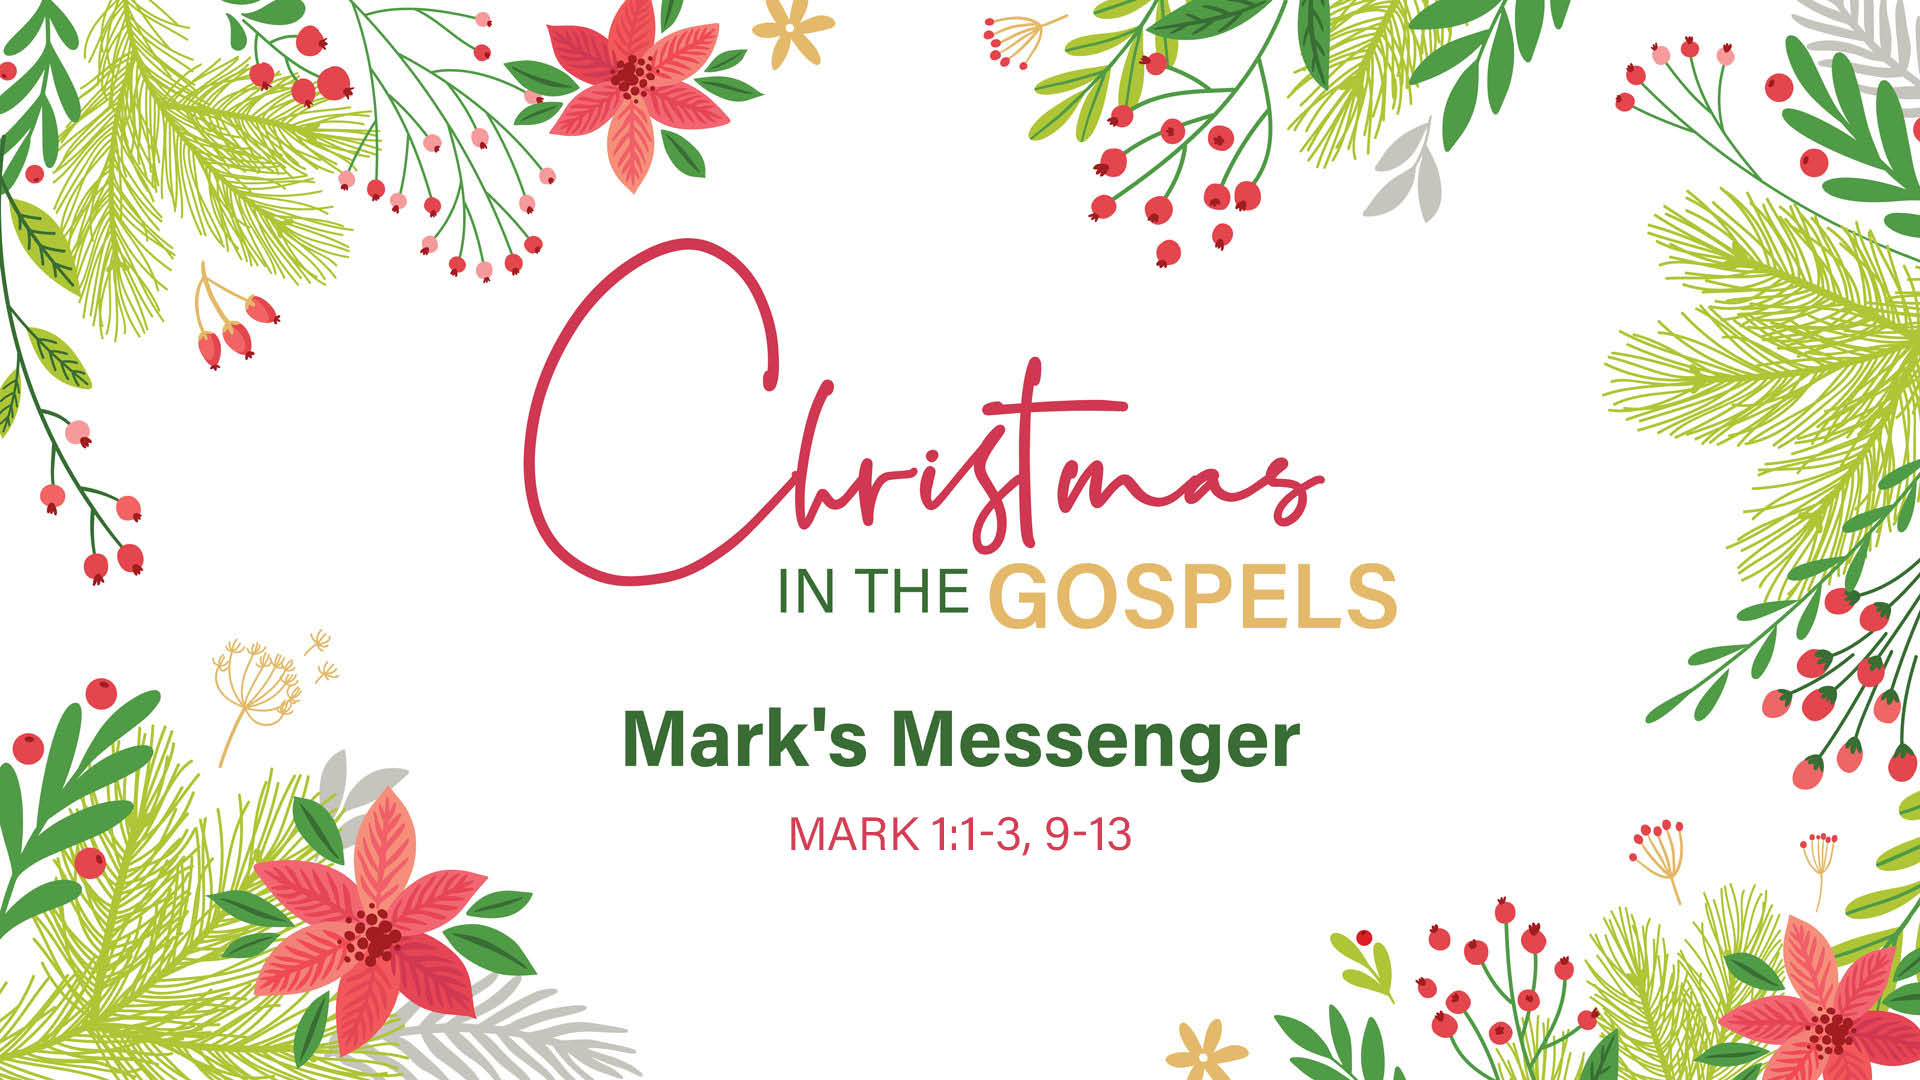 Christmas in the Gospels: Mark's Messenger